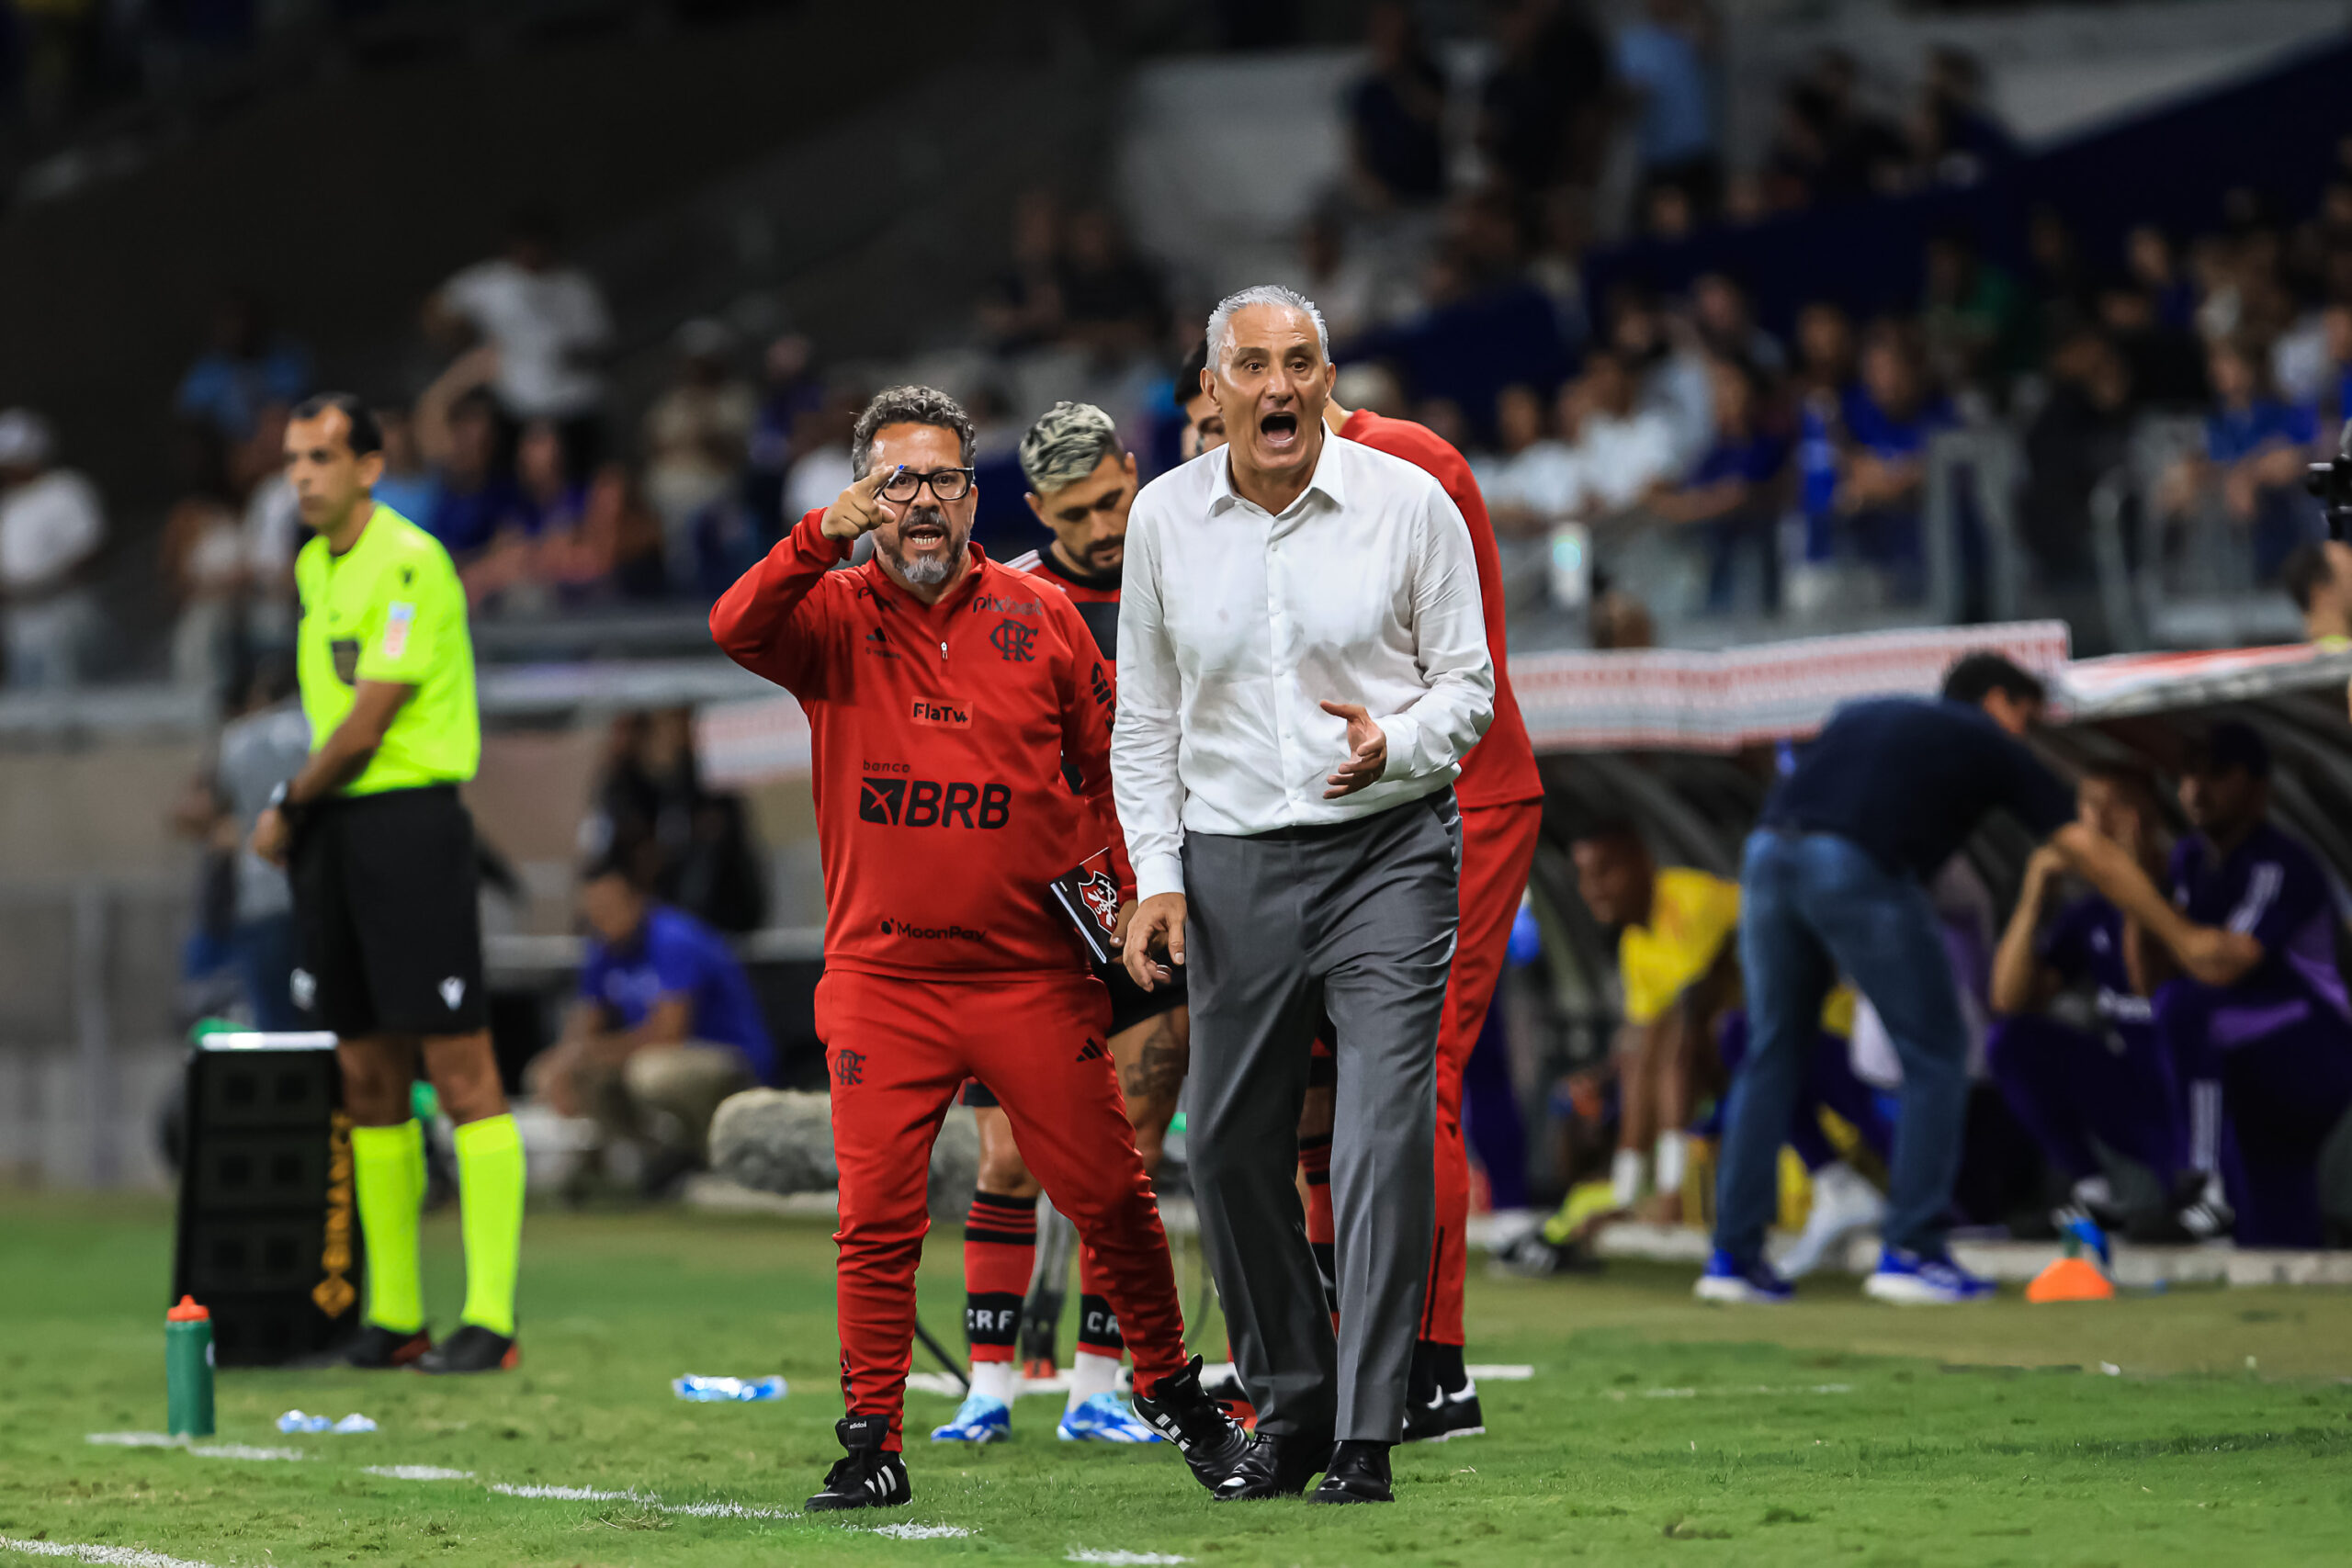 Flamengo: motivos para acreditar na vitória e desconfiar